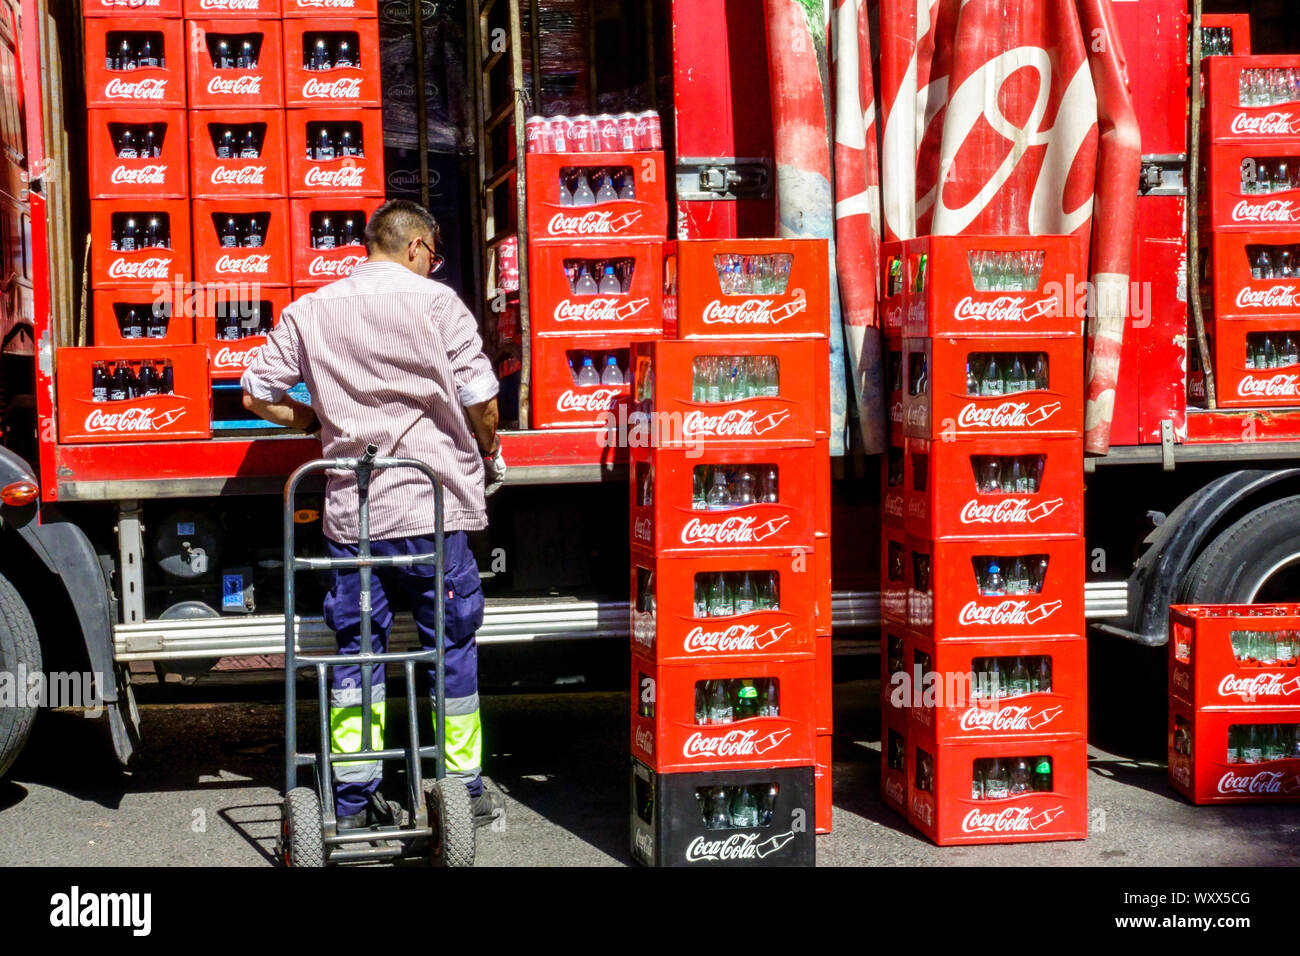 Homme livrant des bouteilles dans des caisses de camion Coca Cola, camion de livraison Coca Cola Espagne Banque D'Images